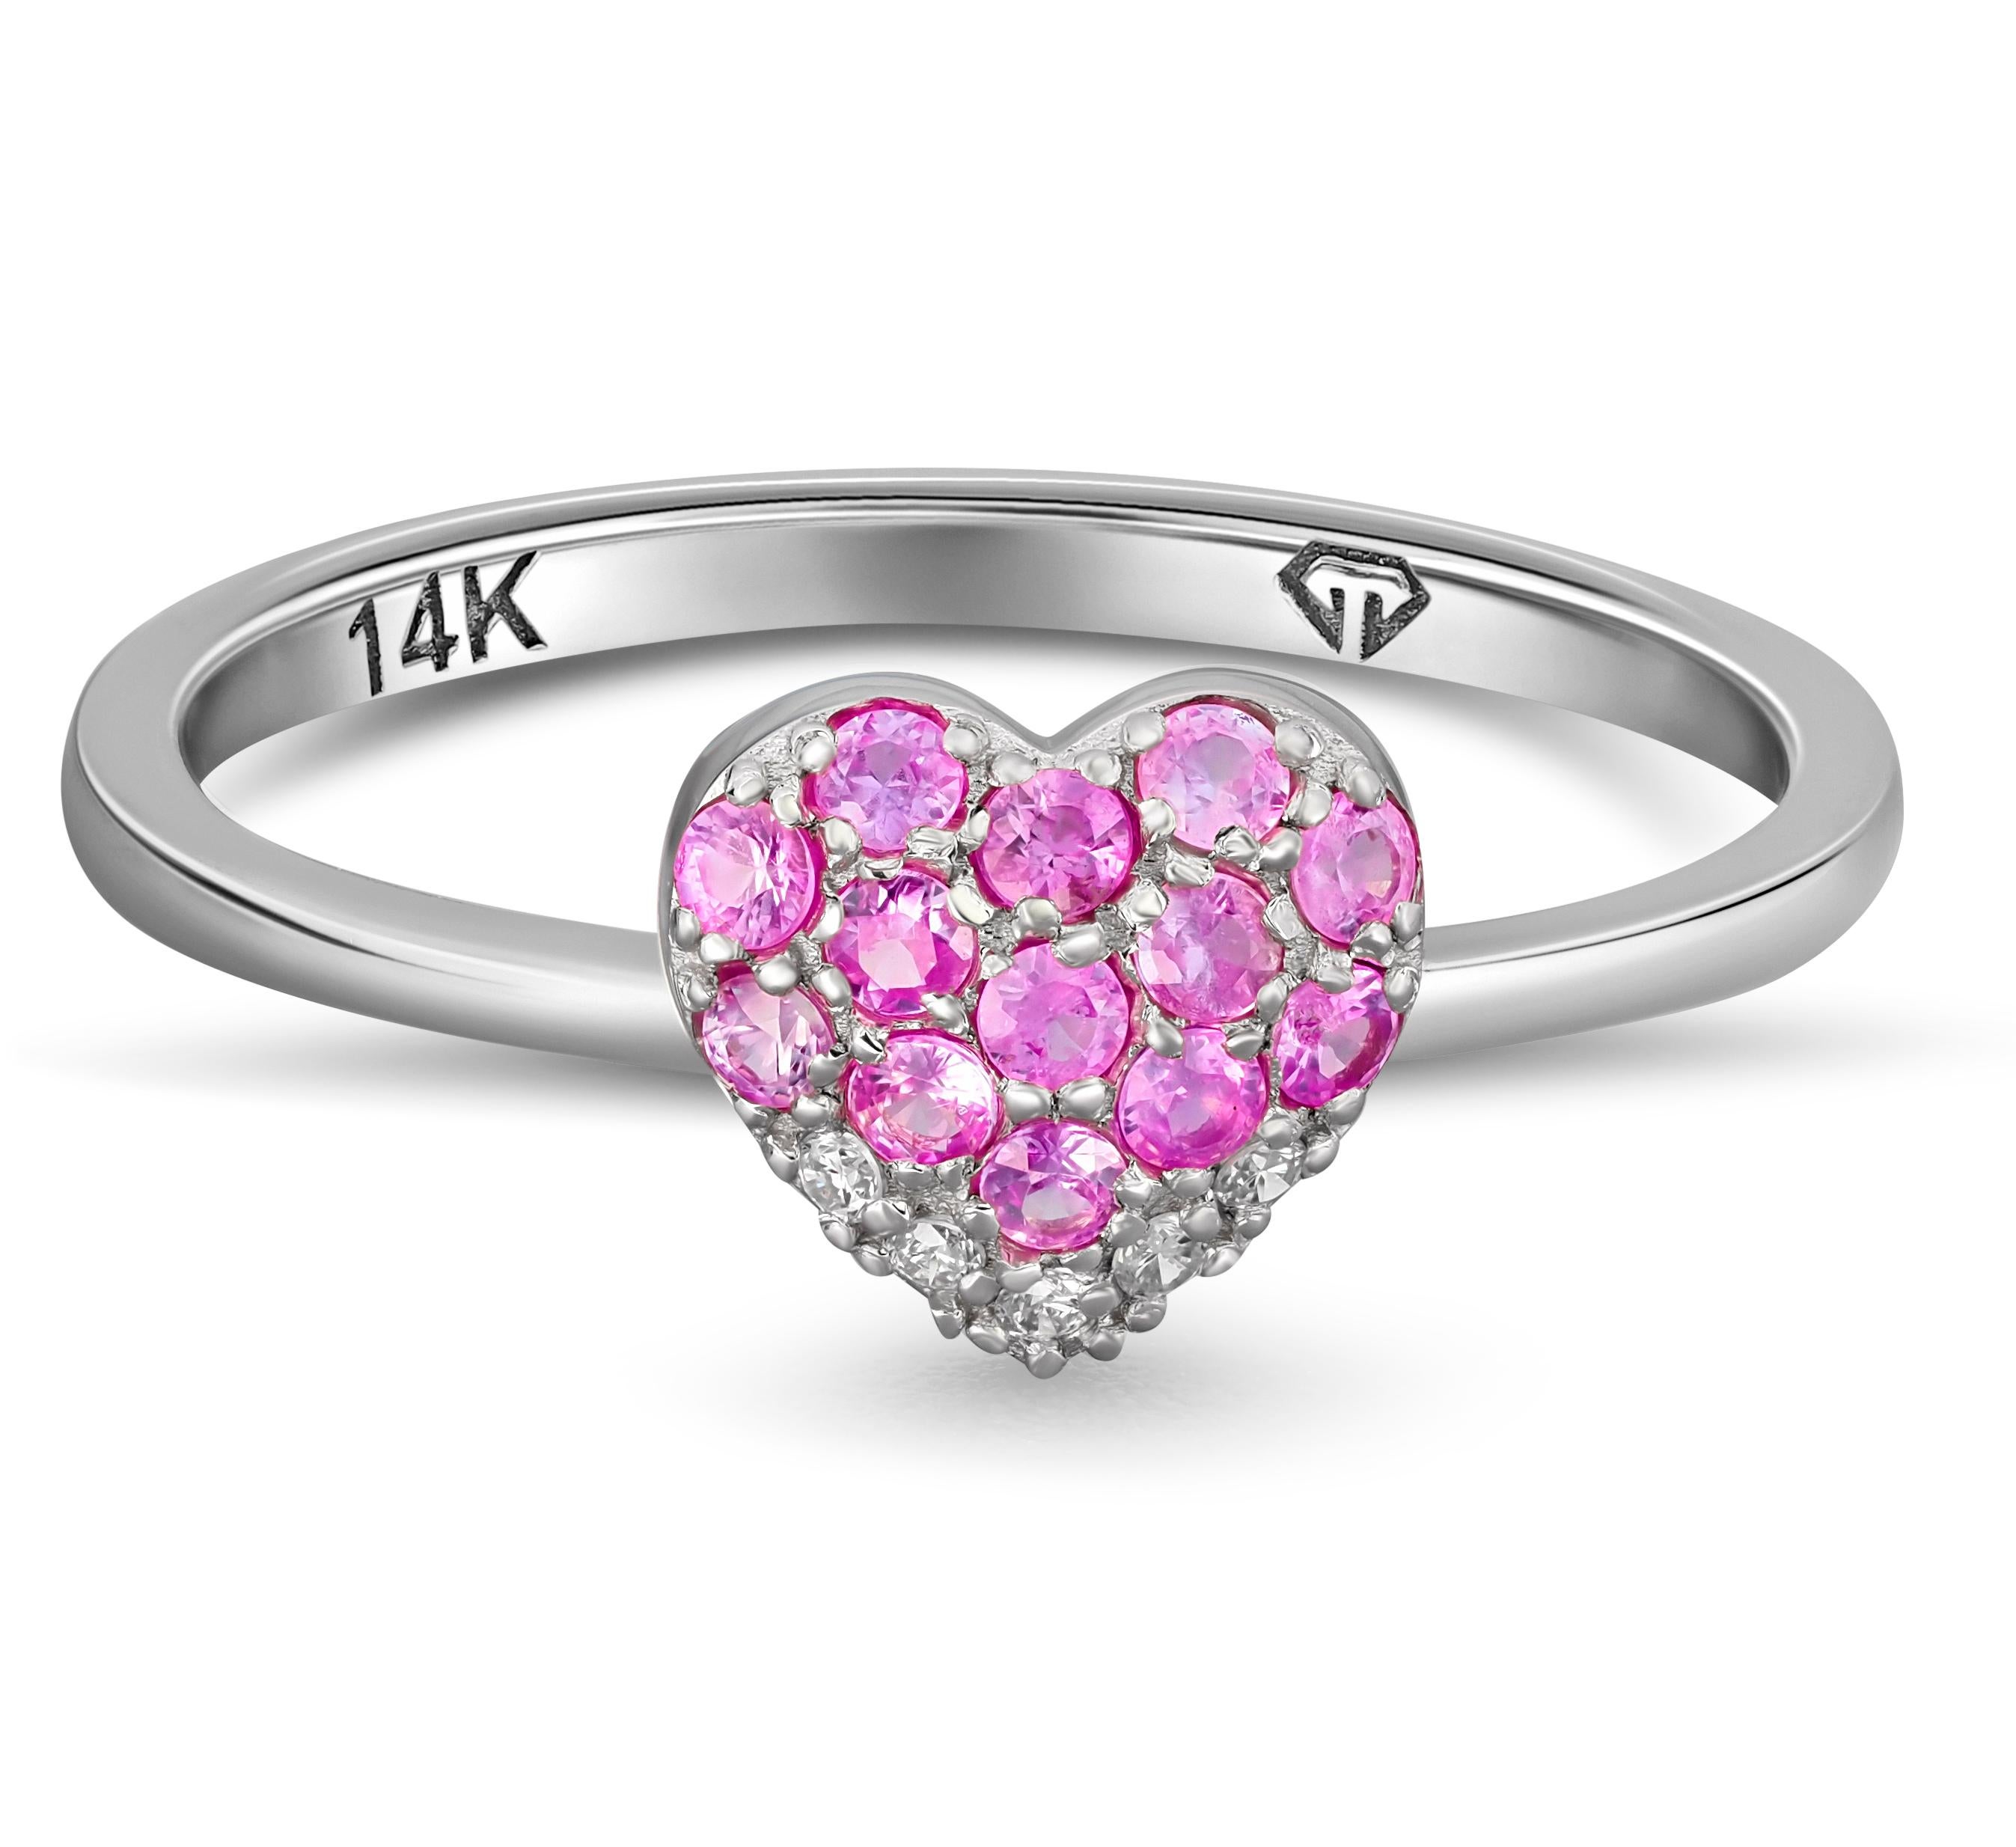 Herzförmiger Goldring mit rosa Saphiren. 
Ring mit natürlichem rosa Herzsaphir. Ring aus 14-karätigem Gold mit rundem Saphir.

Metall: 14k Gold
Gewicht: 1.5 g. abhängig von der Größe

Edelsteine:
Saphir: Farbe - rosa
Rundschliff, Gewicht - insgesamt